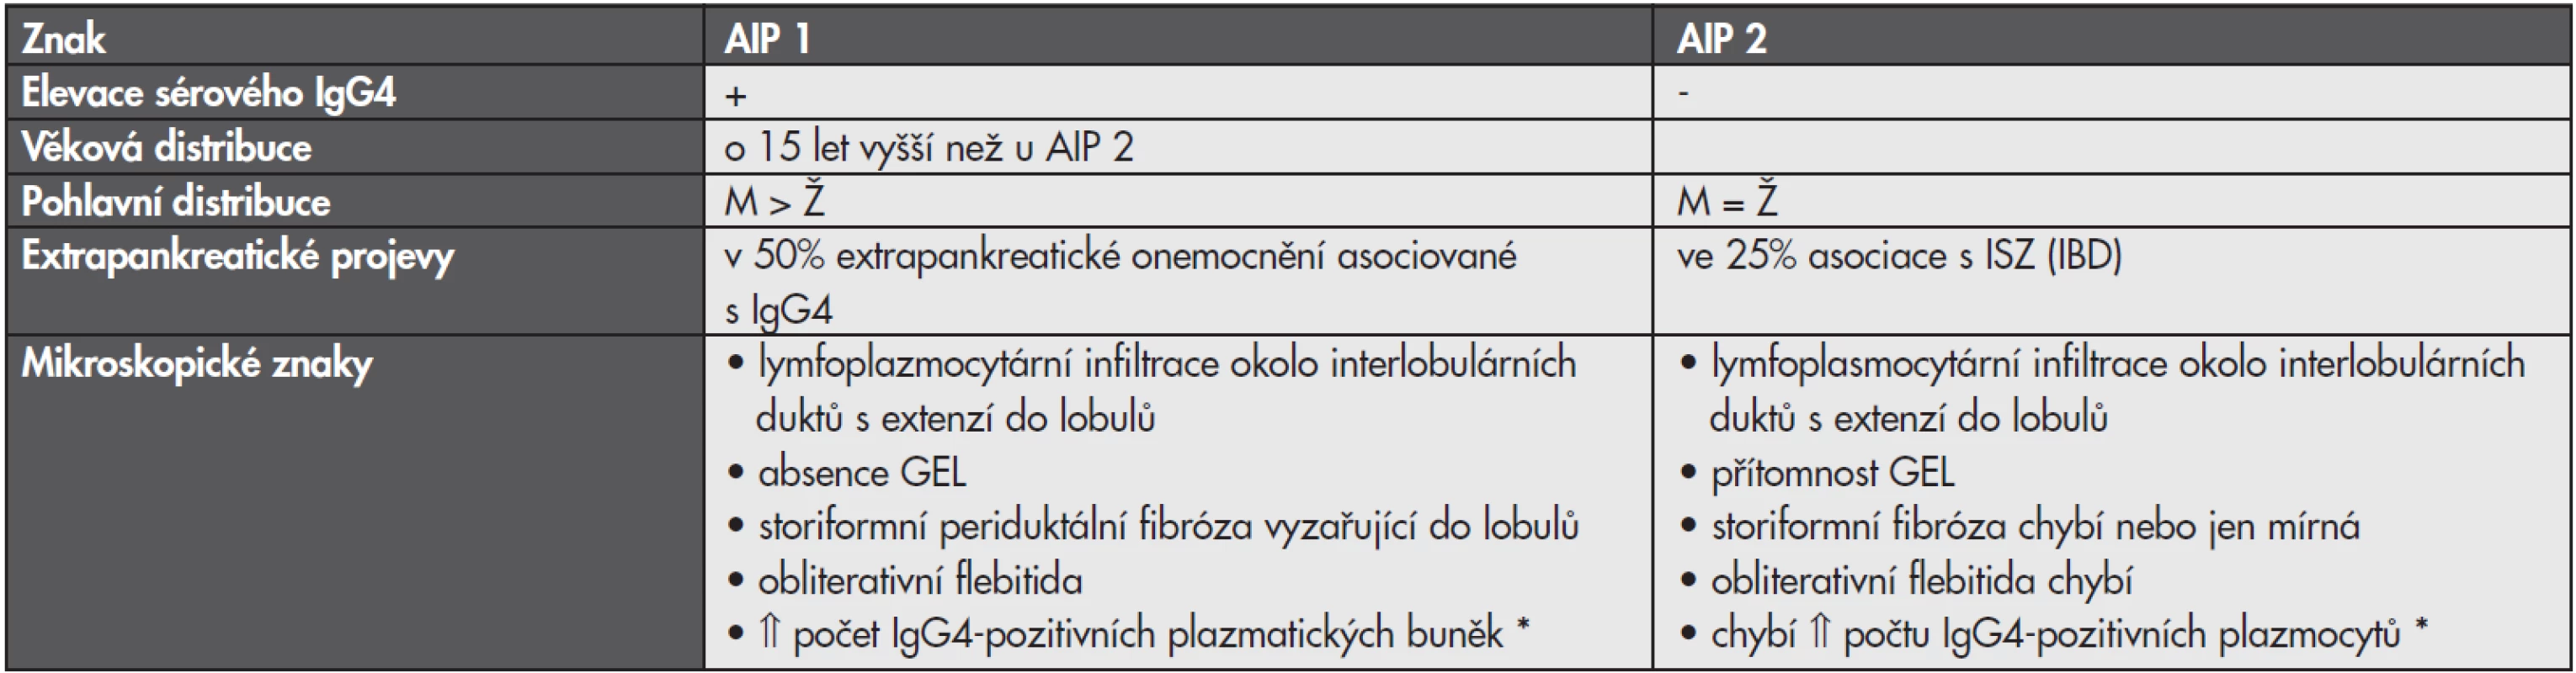 Autoimunní pankreatitida (AIP)